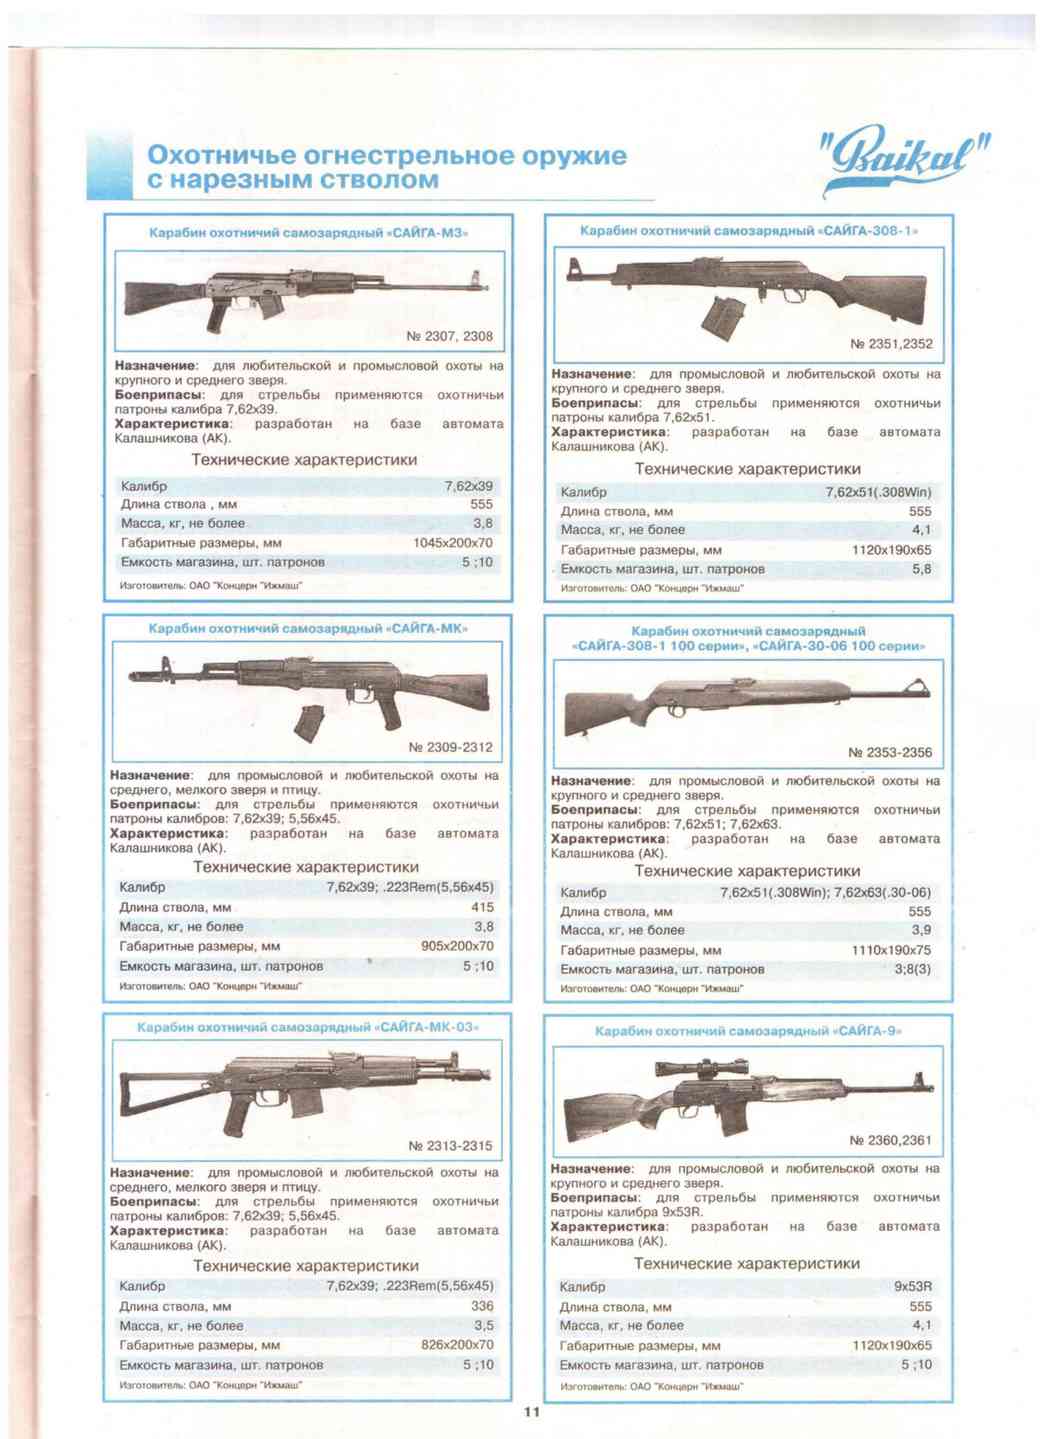 Характеристики описание оружия